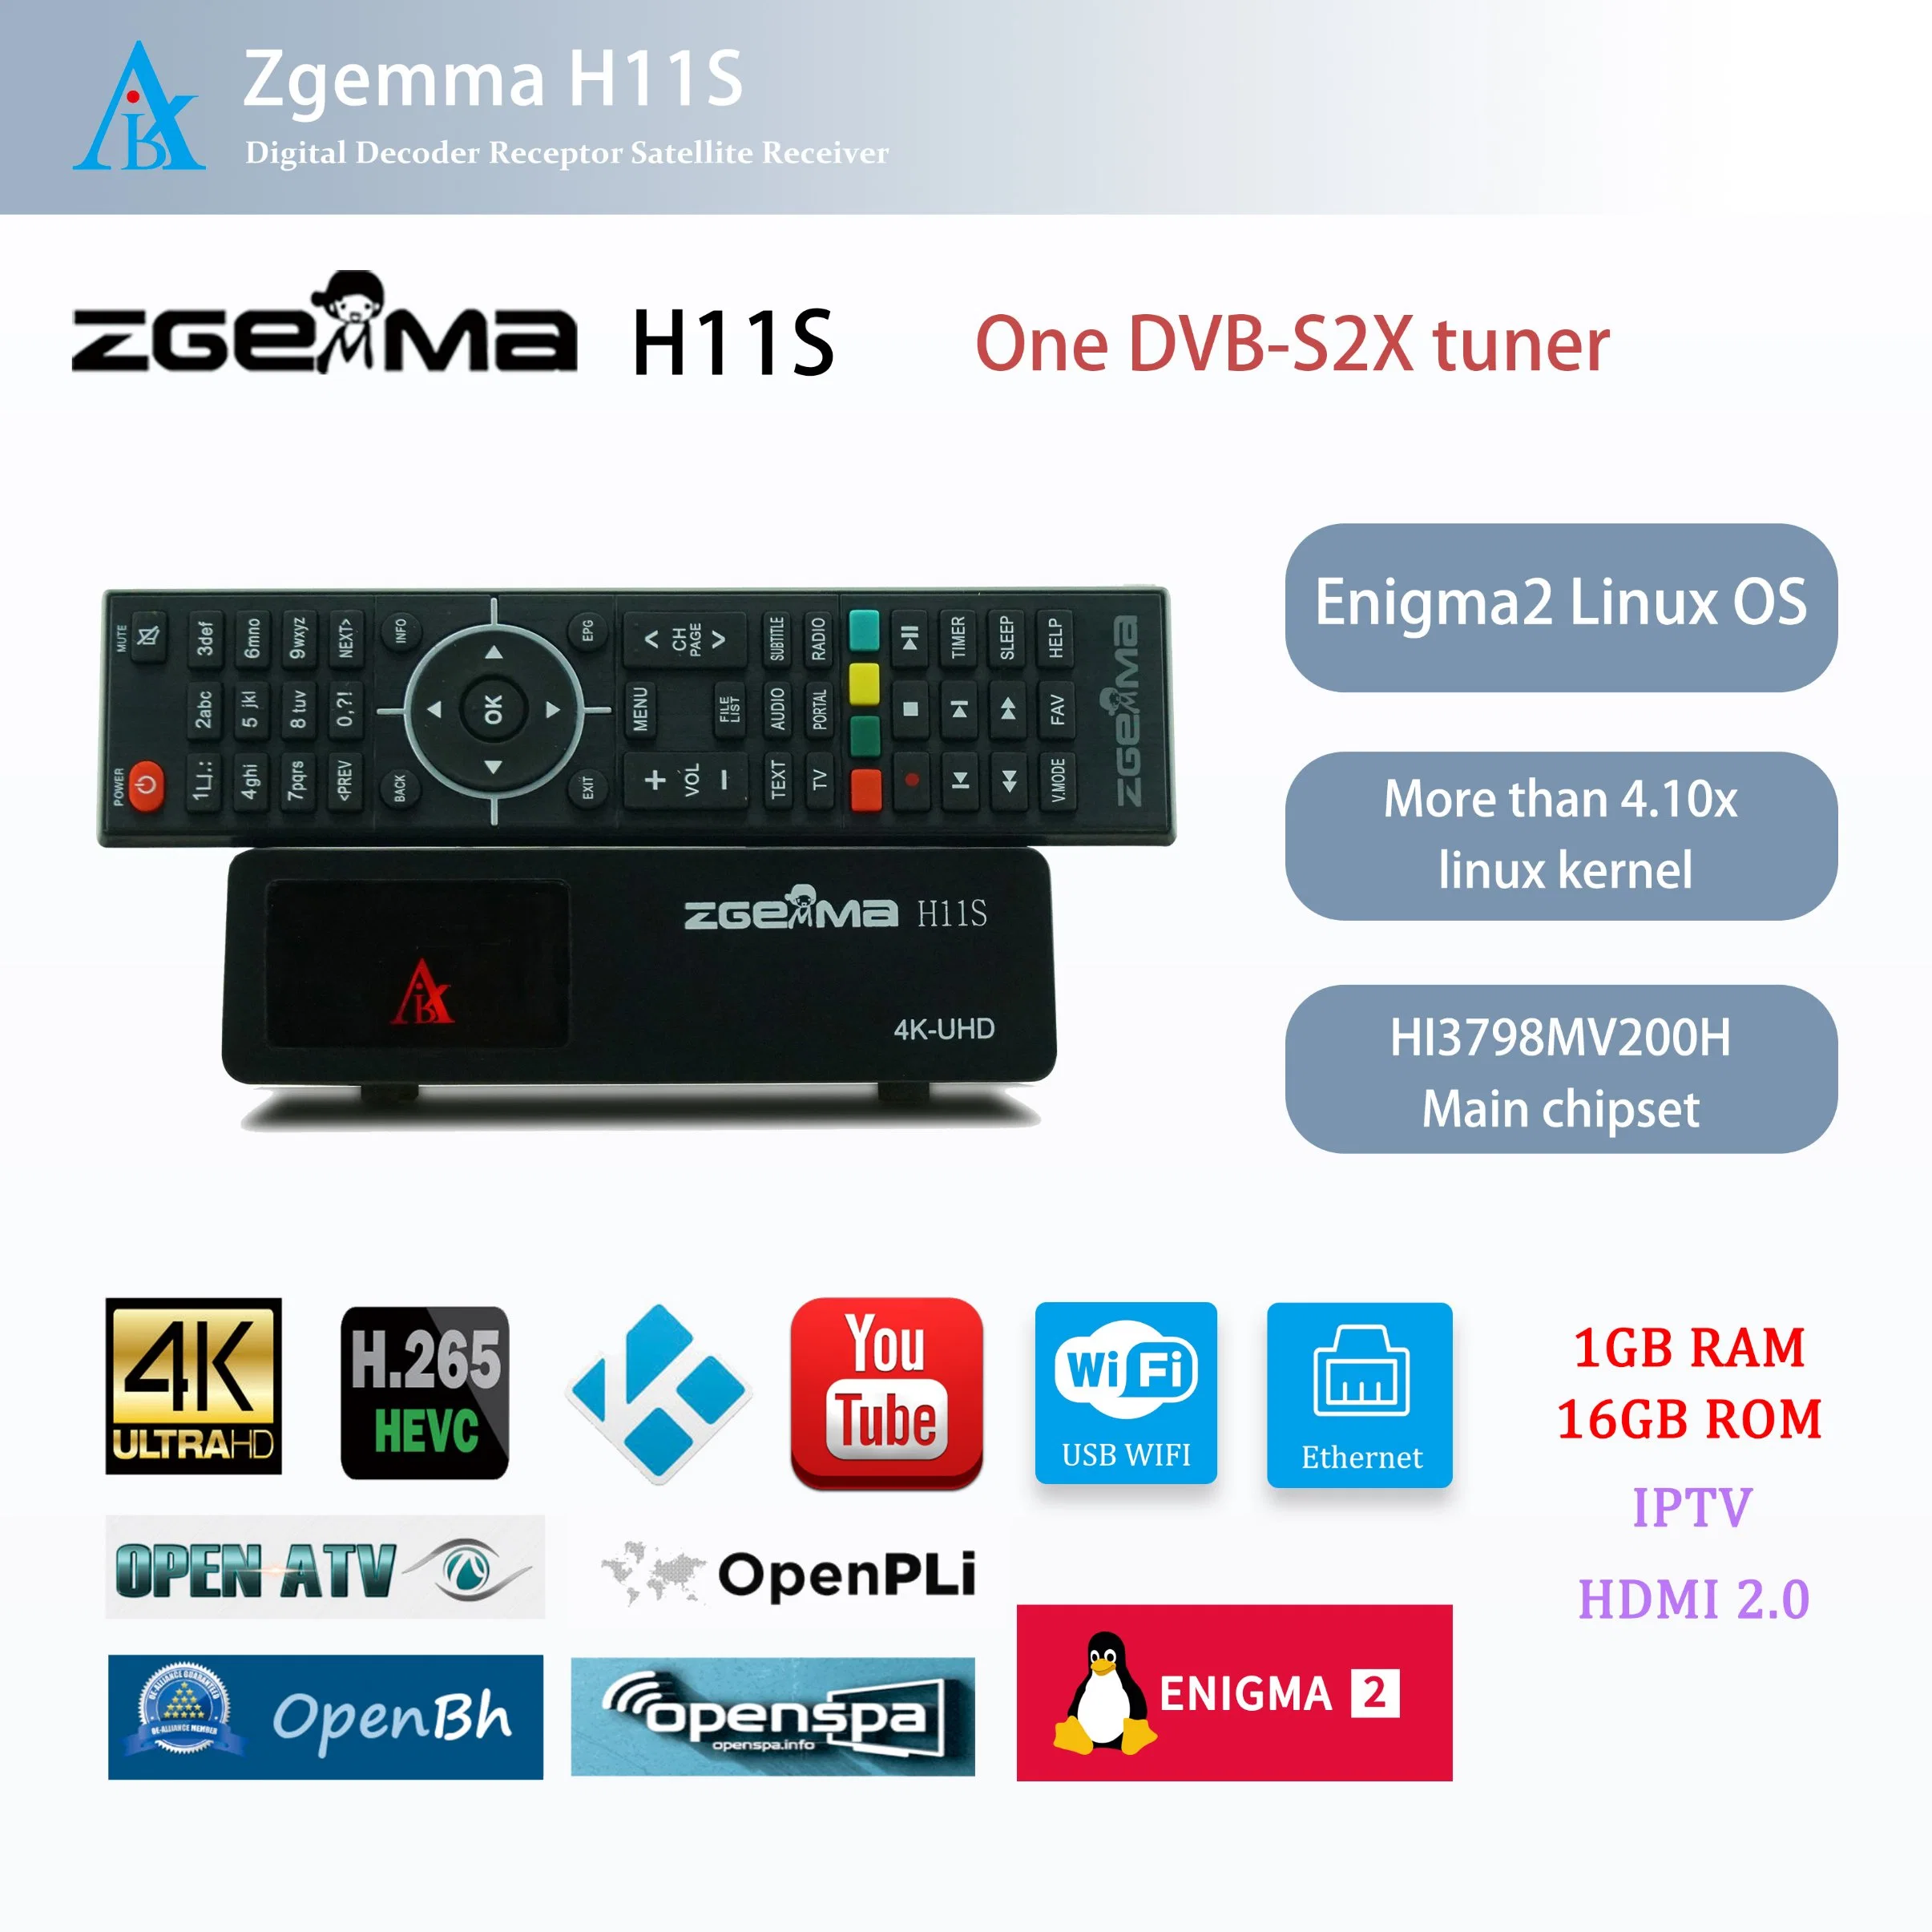 أجهزة استقبال الأقمار الصناعية Zgemma H11s - Enigma2 Linux OS، وجهاز موالفة DVB-S2X، وجهاز فك تشفير التلفاز